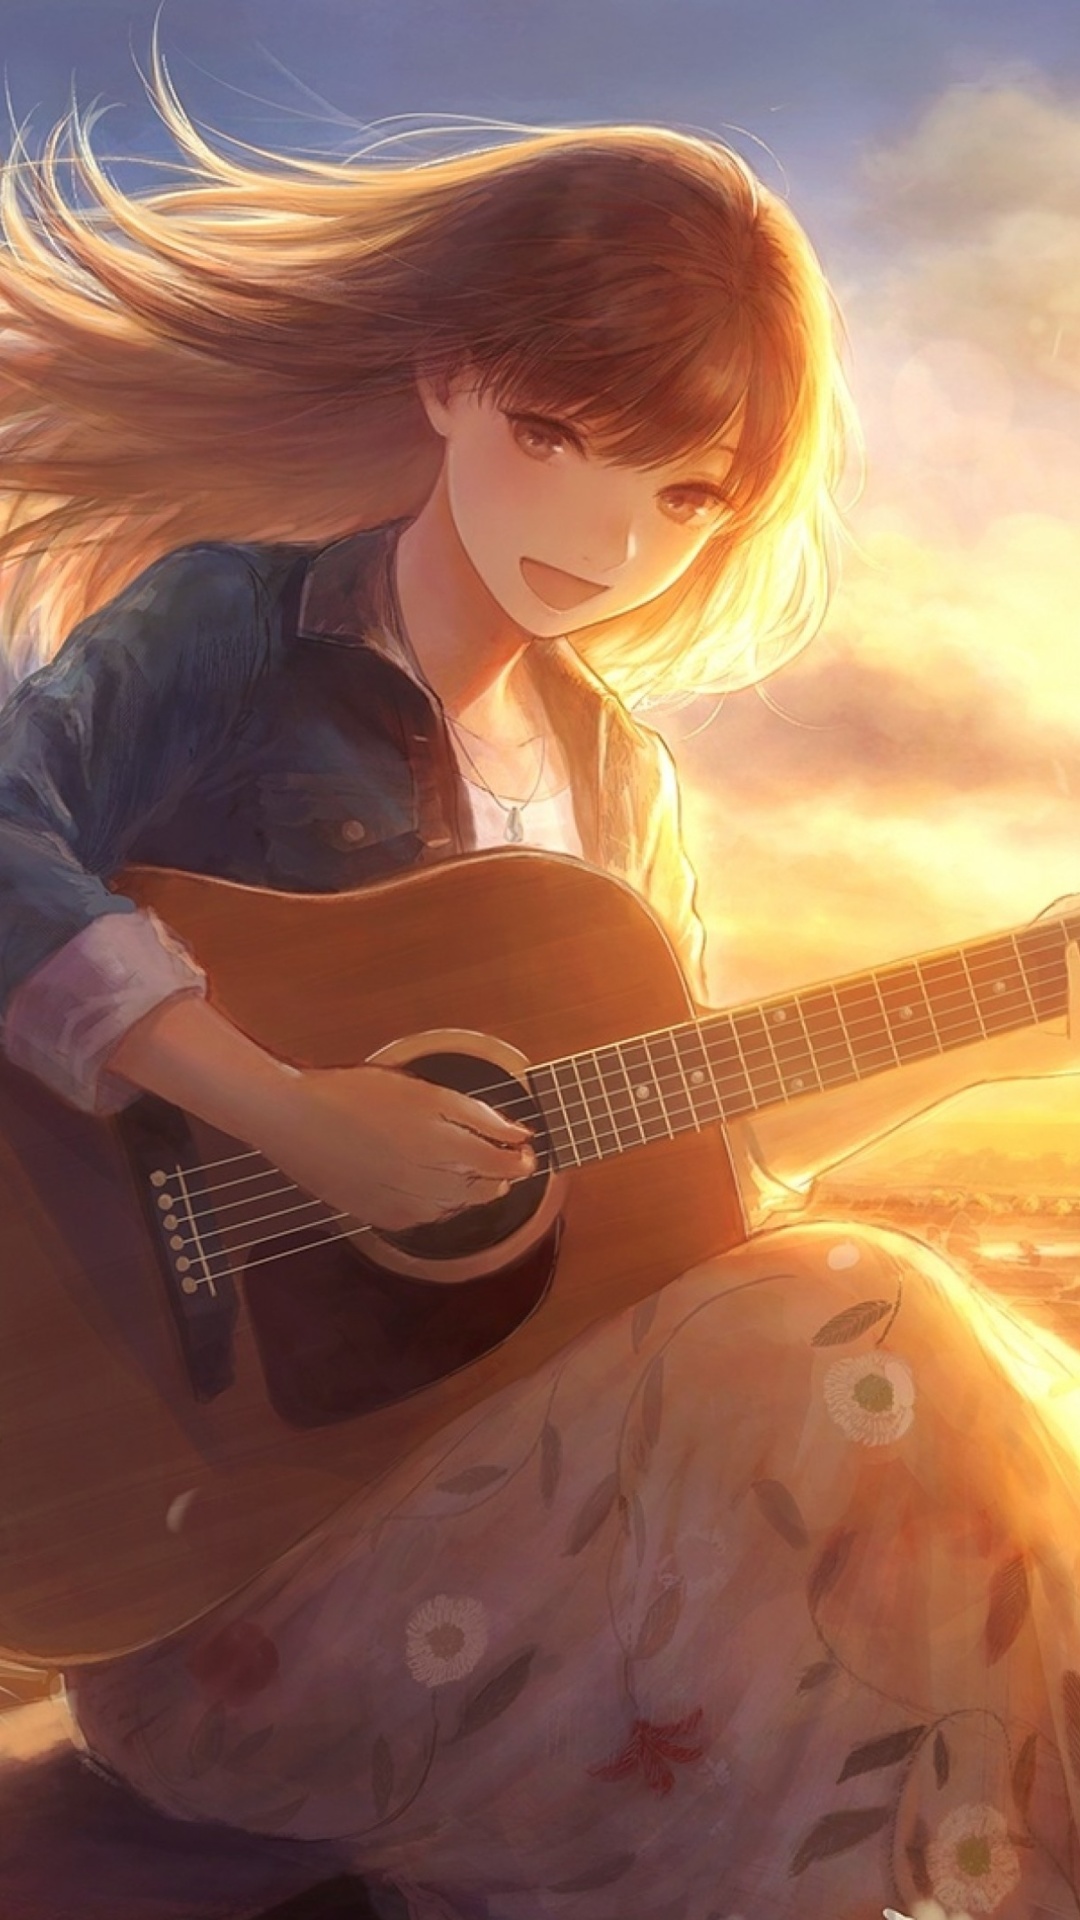 Обои Anime Girl with Guitar 1080x1920